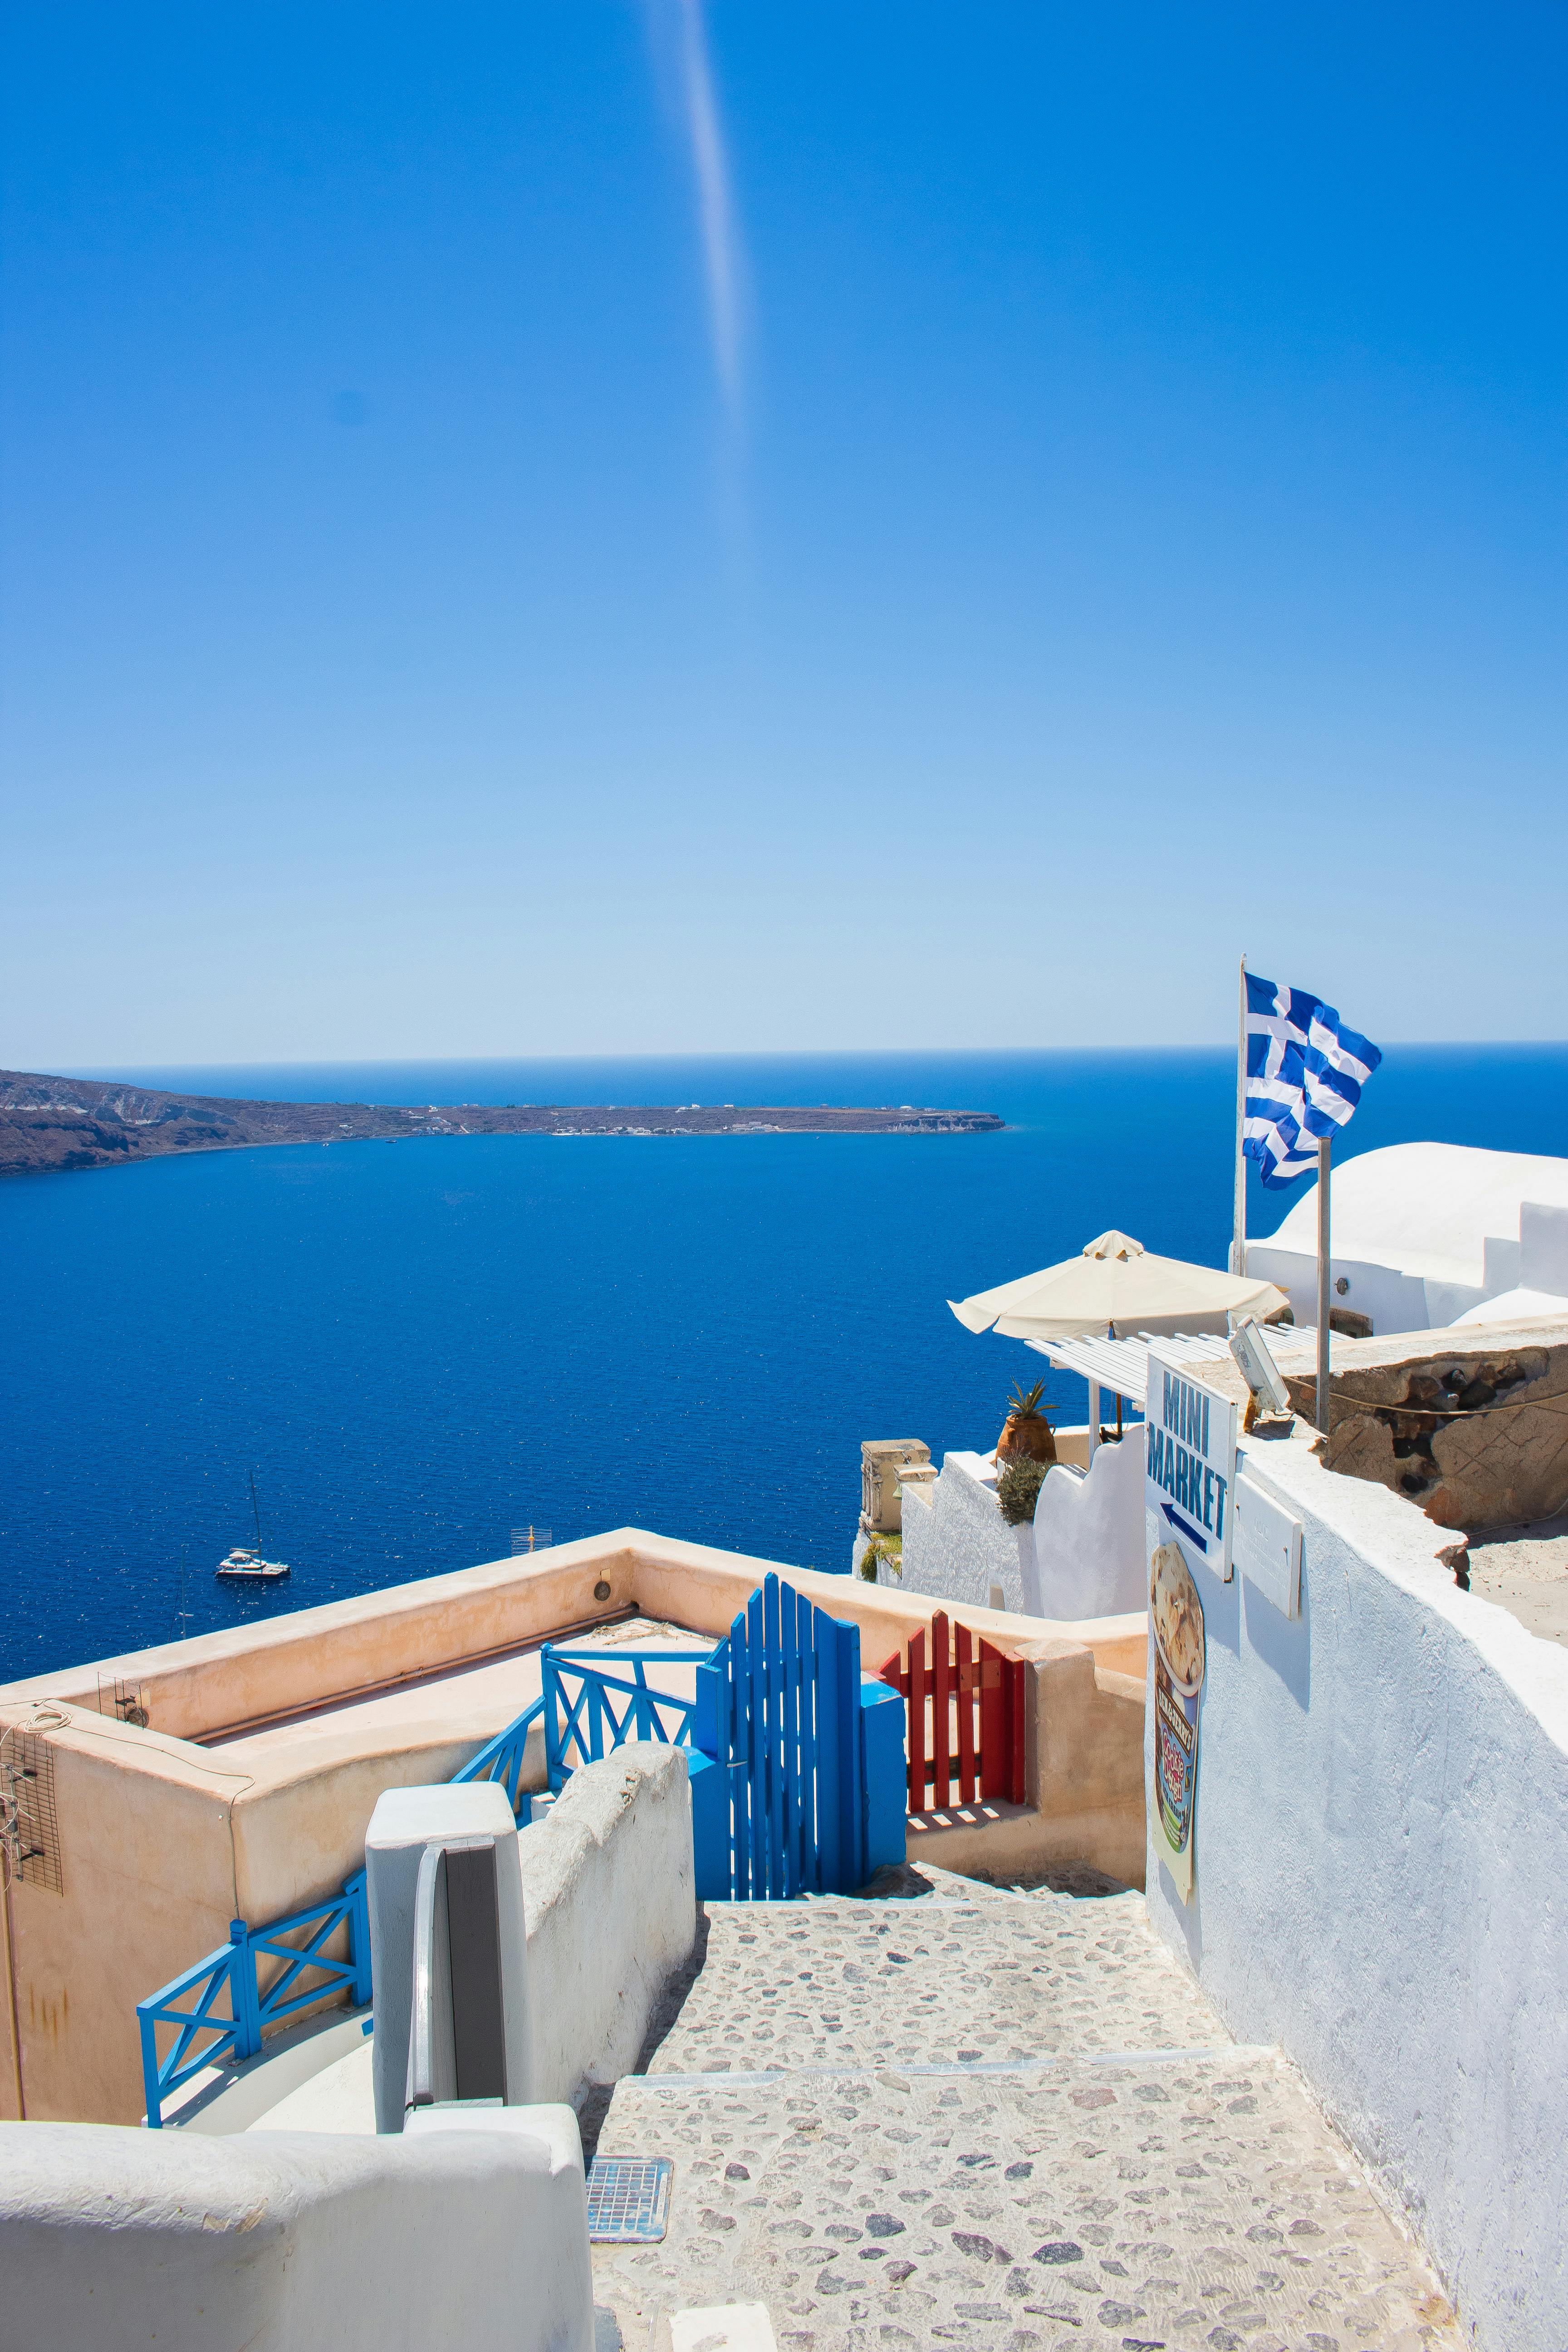 Griechische Flagge am Strand - ein lizenzfreies Stock Foto von